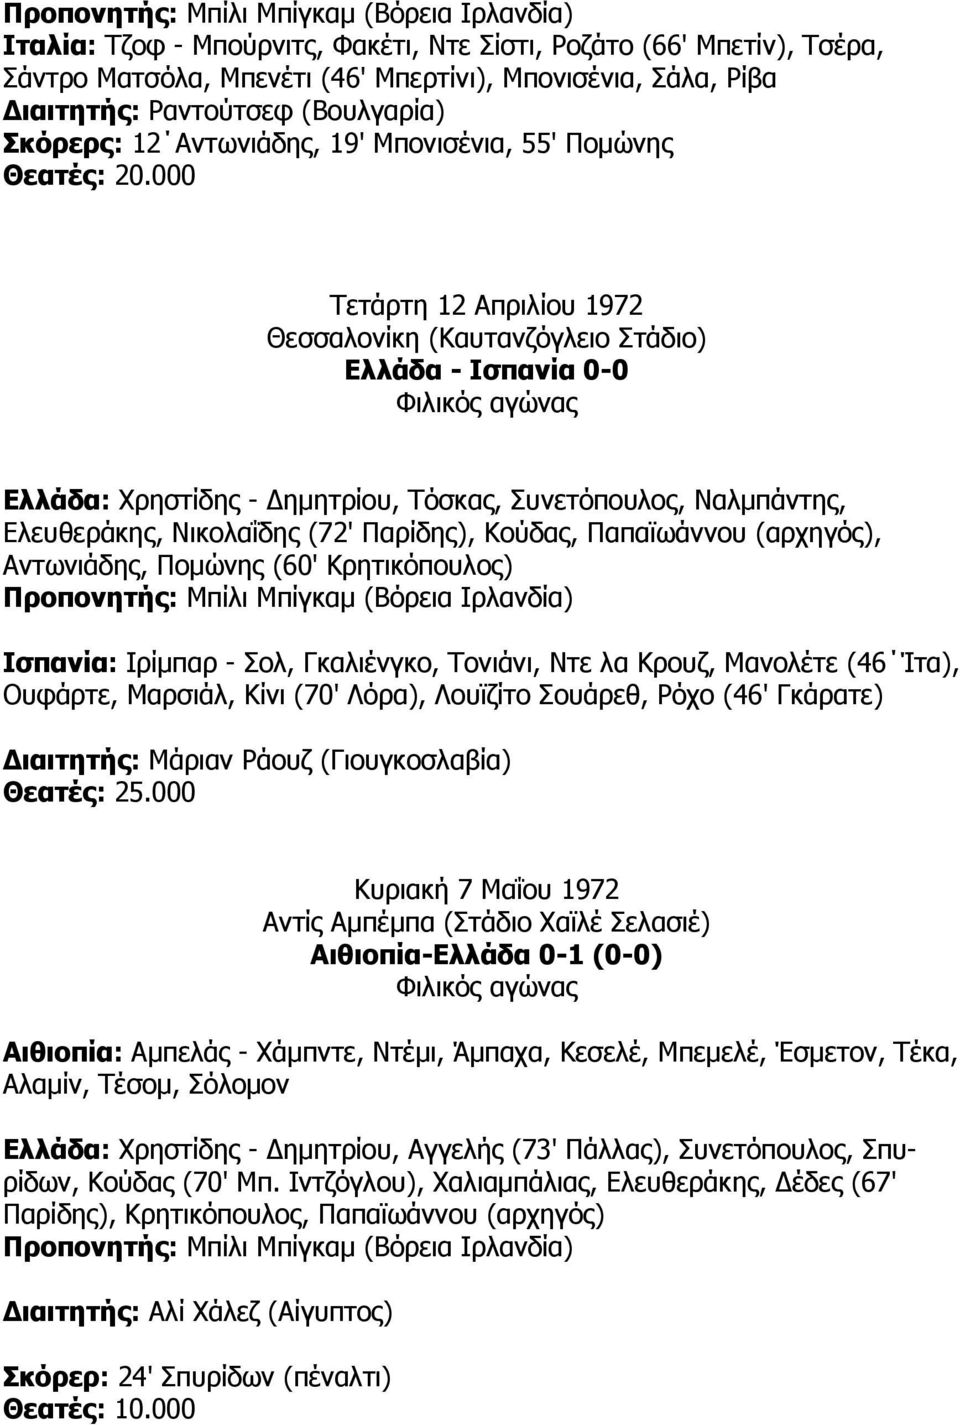 000 Τετάρτη 12 Απριλίου 1972 Θεσσαλονίκη (Καυτανζόγλειο Στάδιο) Ελλάδα - Ισπανία 0-0 Ελλάδα: Χρηστίδης - ηµητρίου, Τόσκας, Συνετόπουλος, Ναλµπάντης, Eλευθεράκης, Νικολαΐδης (72' Παρίδης), Κούδας,